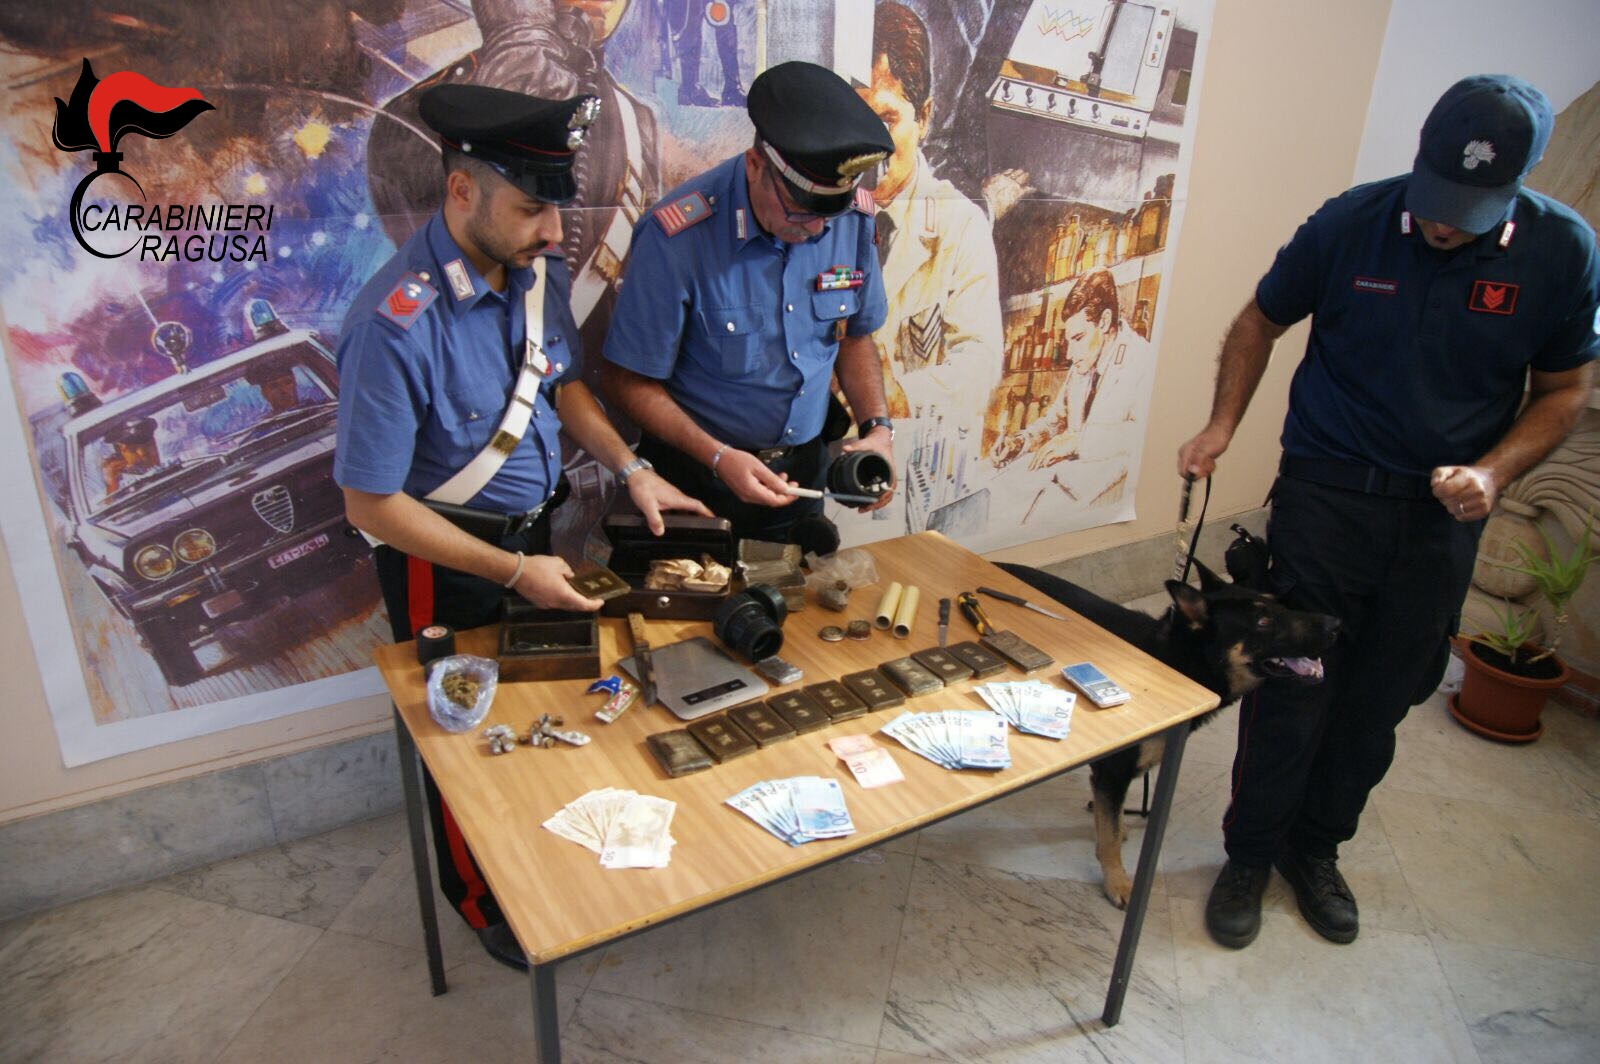  Tre arresti per spaccio di droga: 42enne di Santa Croce con 12 panetti di hashish